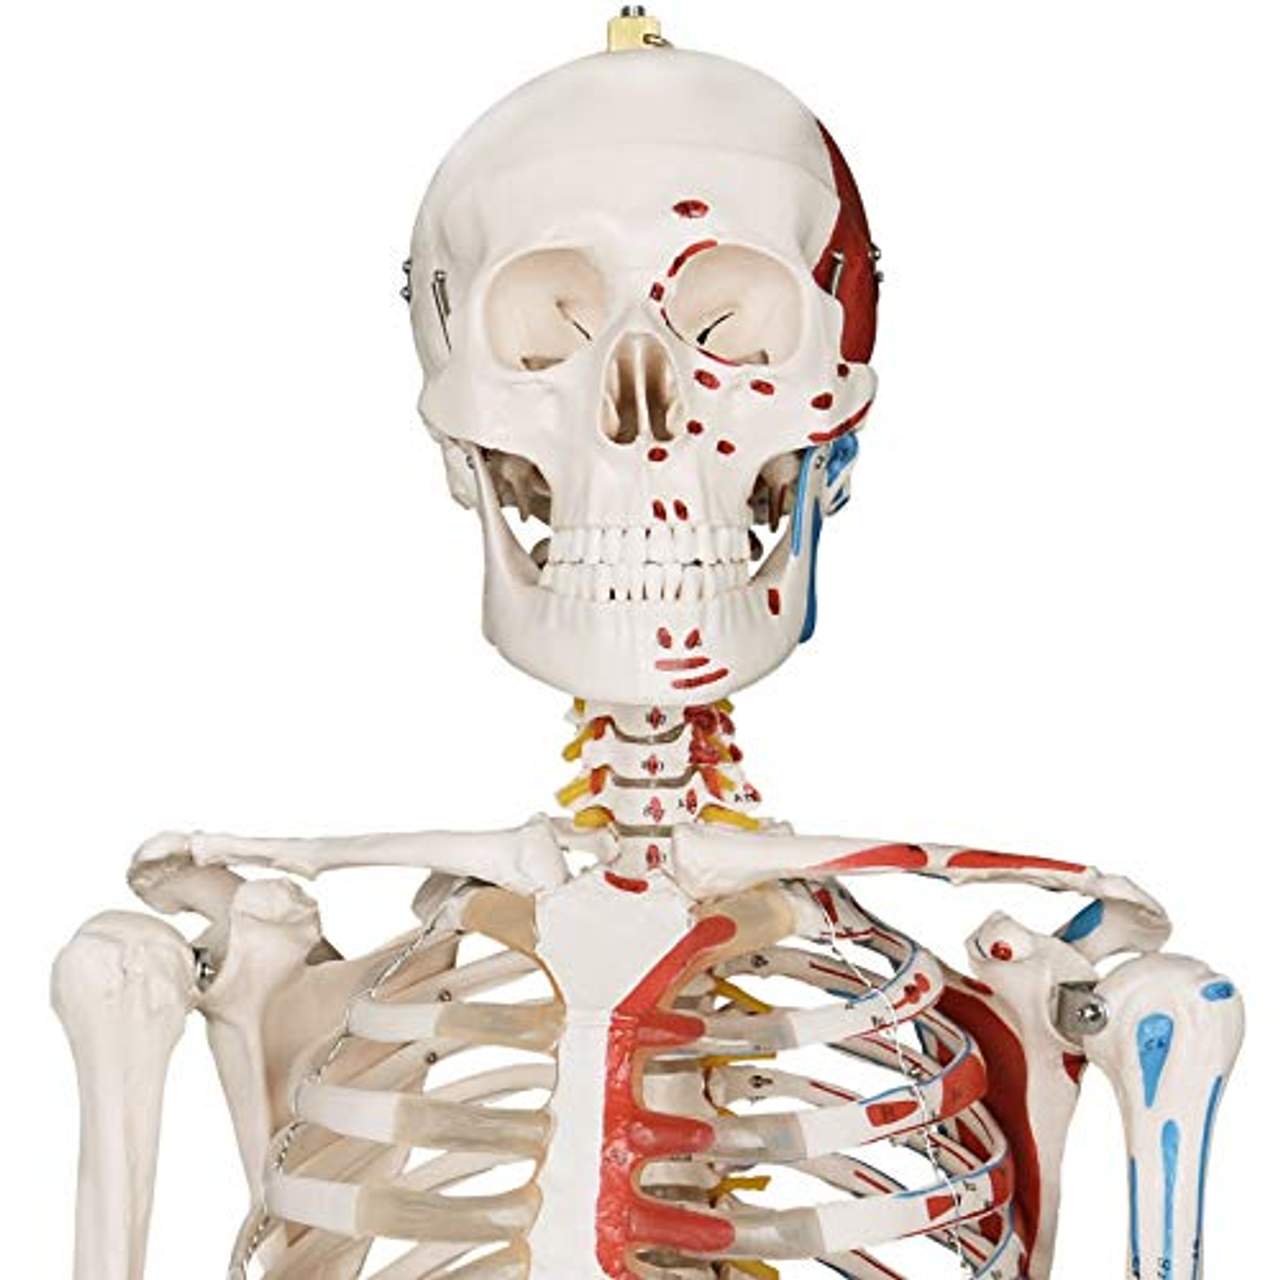 Jago Menschliches Anatomie Skelett 181.5 cm